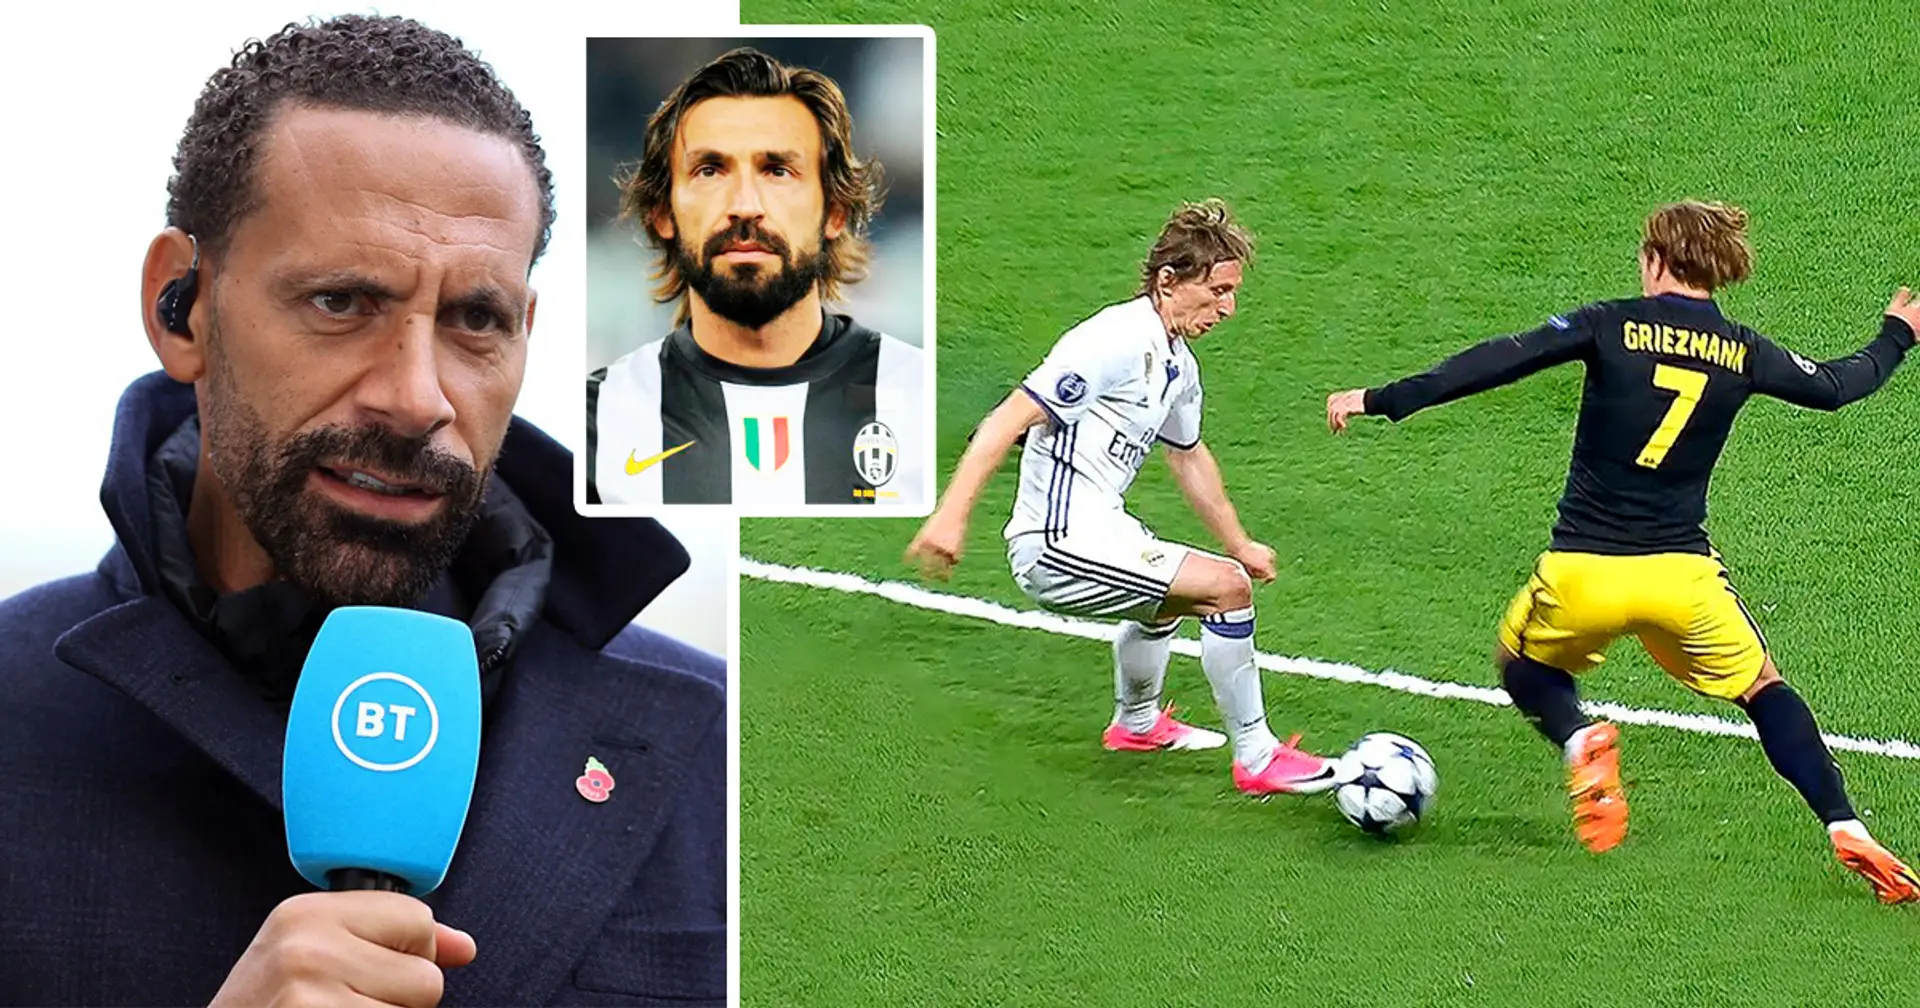 "Pirlo oder Modric? Modric": Ferdinands Antwort auf die Frage nach der Wahl zwischen Luka Modric und Andrea Pirlo